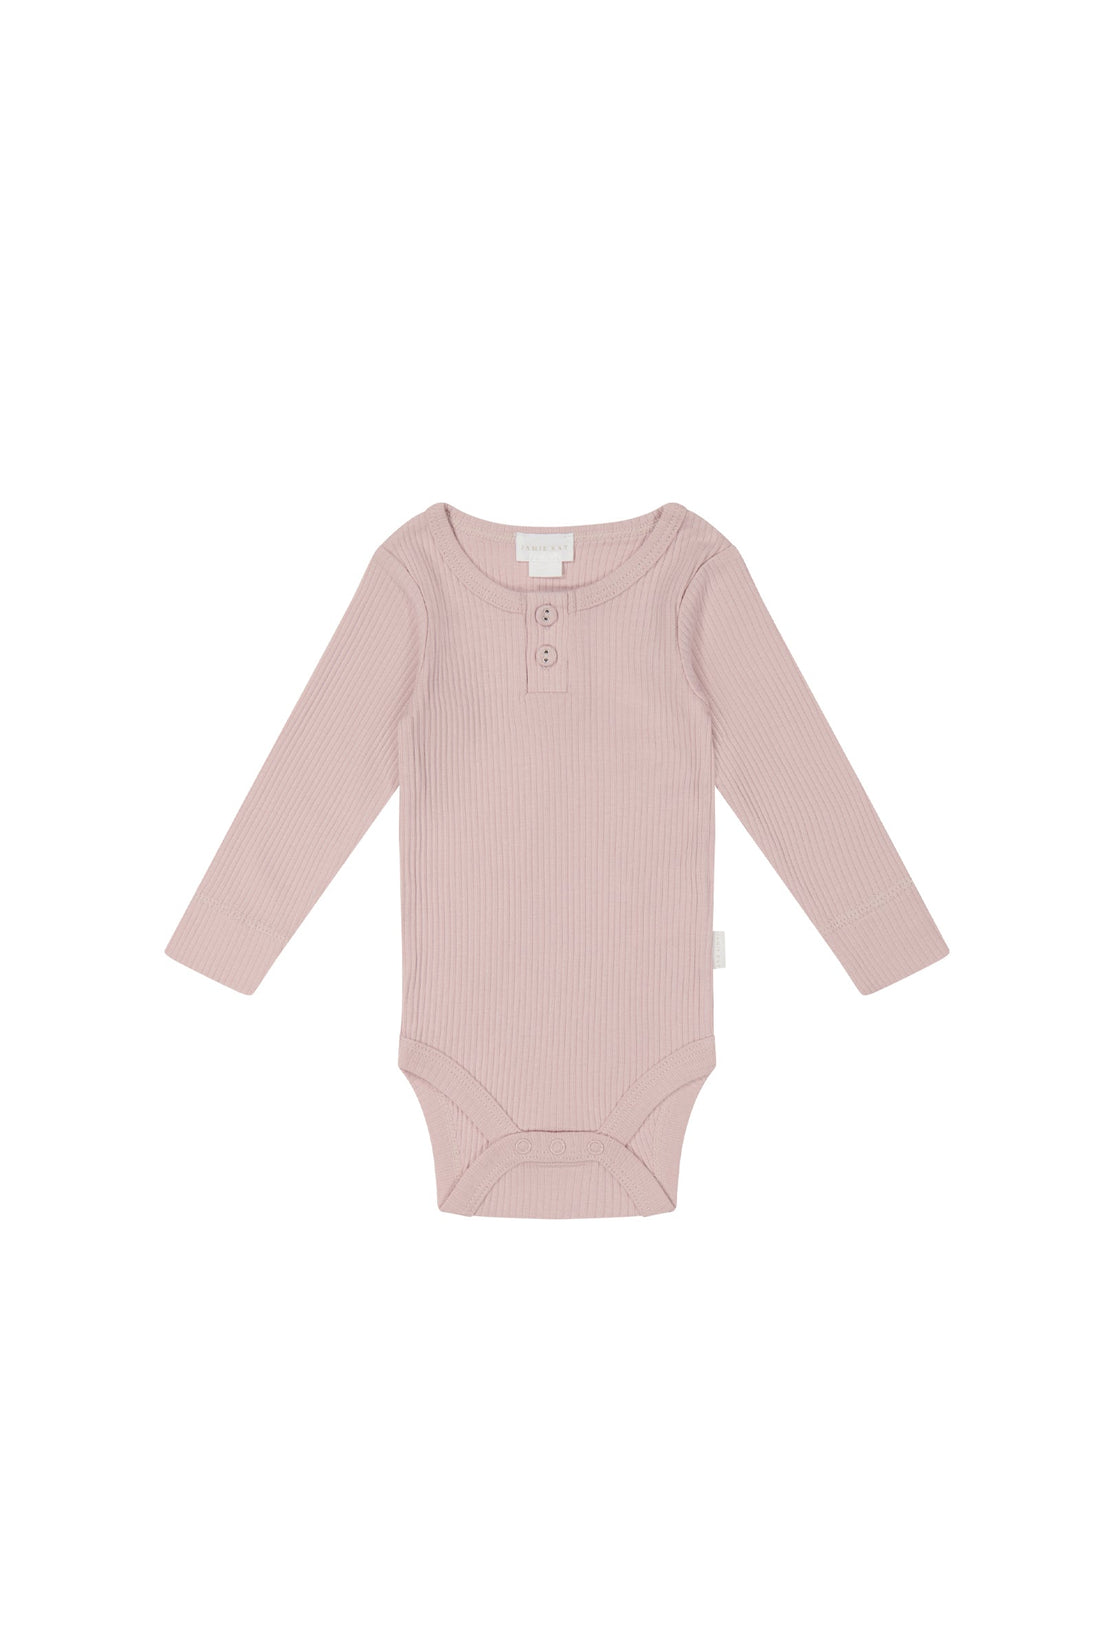 Organic Cotton Modal Elastane Long Sleeve Bodysuit - Powder Pink - Baby Bodysuit at Jamie Kay